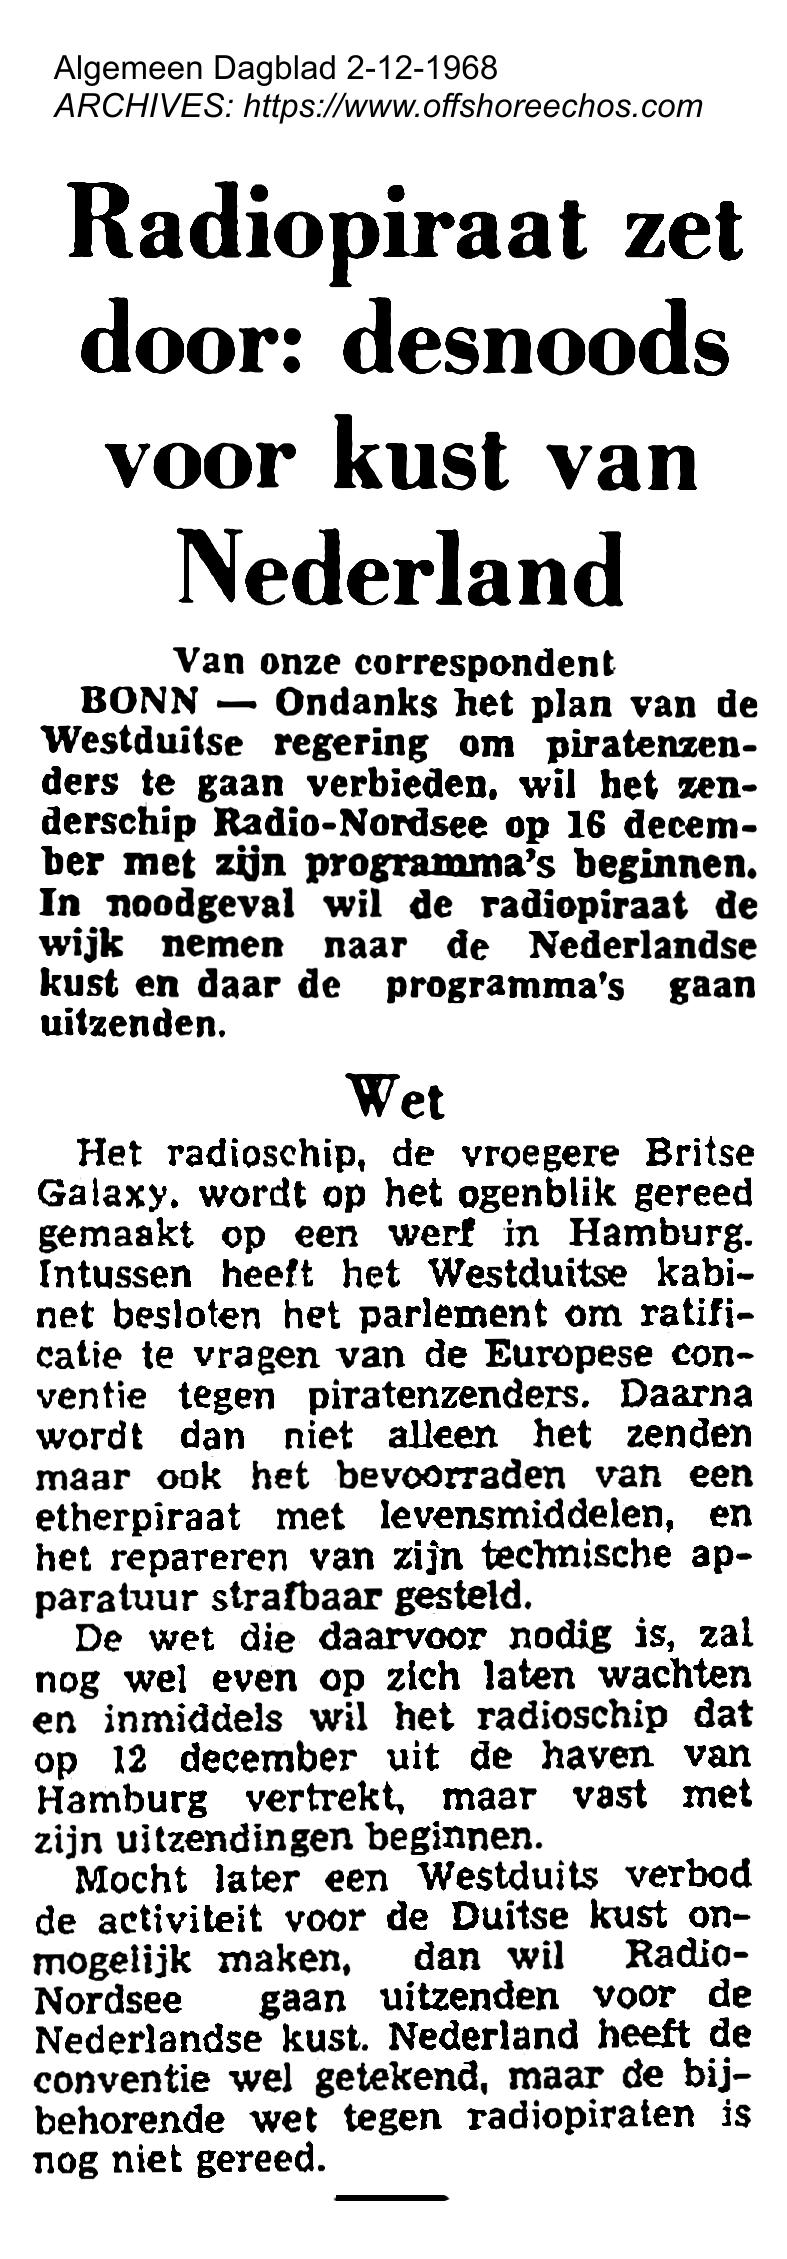 19681202 AD Radiopiraat zet door desnoods voor de kust van nederland.jpg